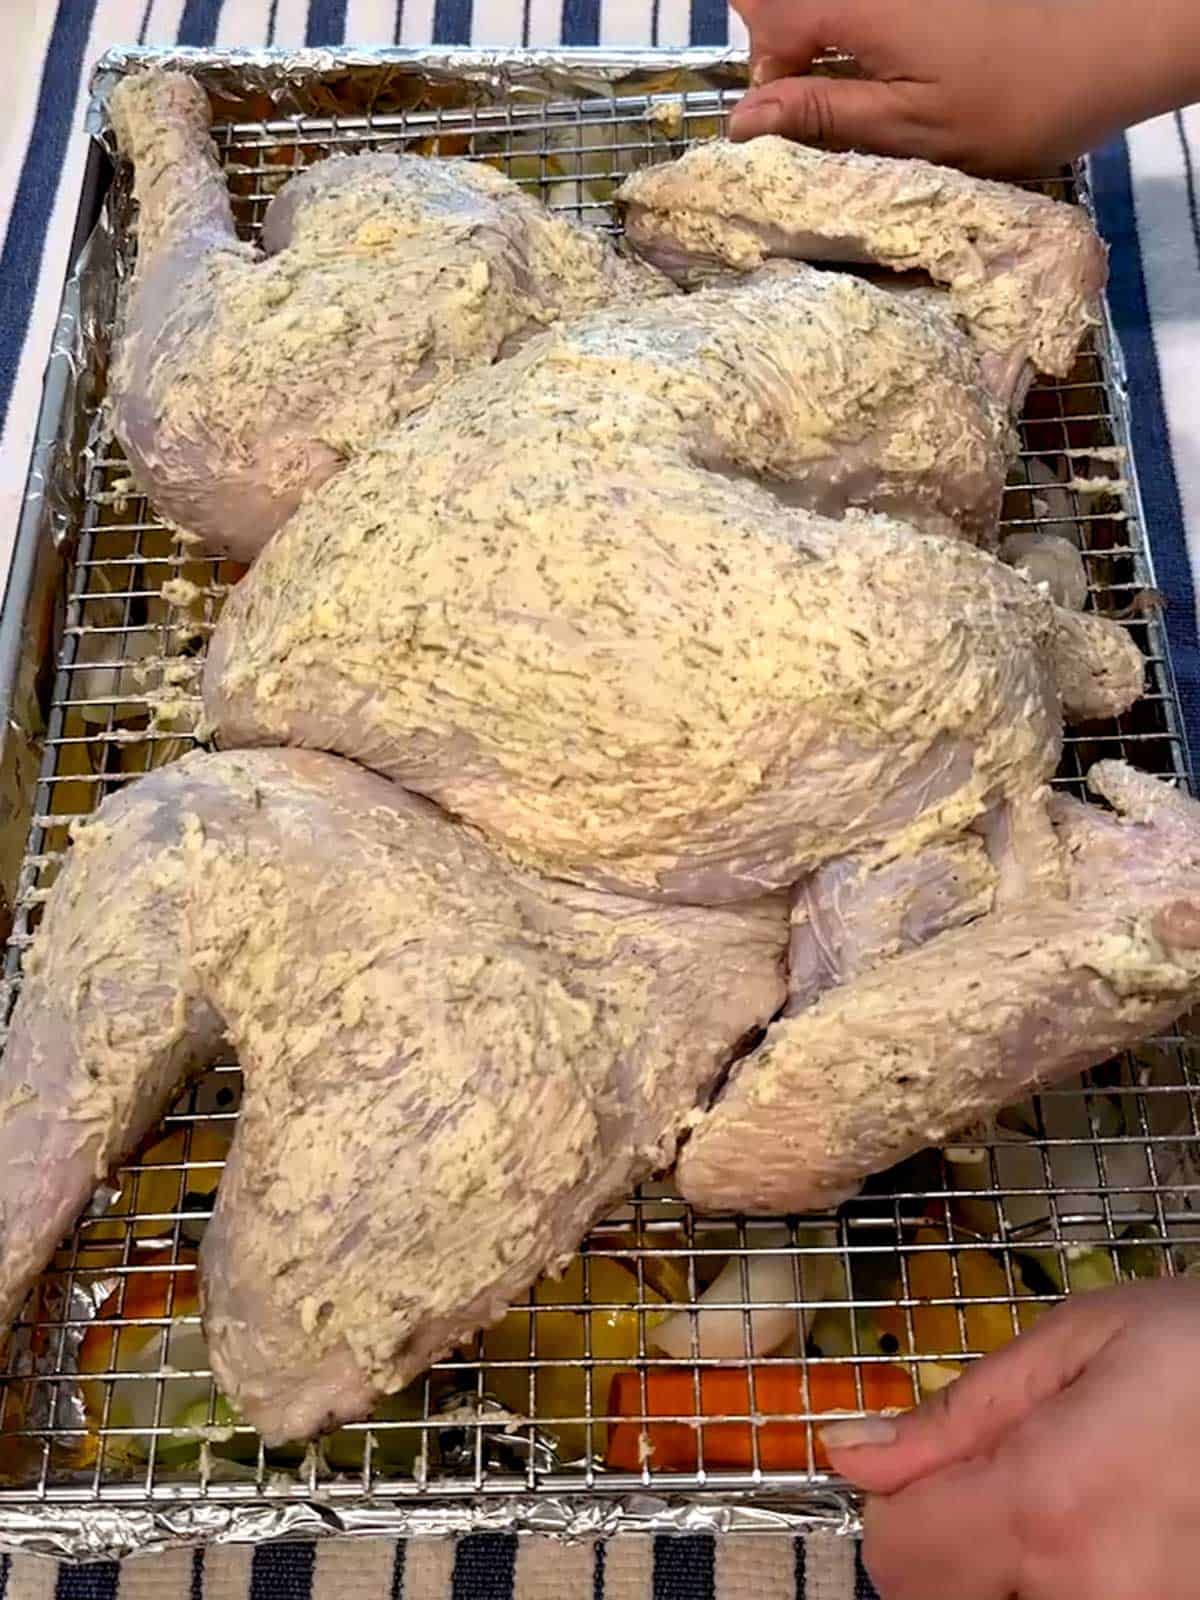 Placing turkey in roasting pan